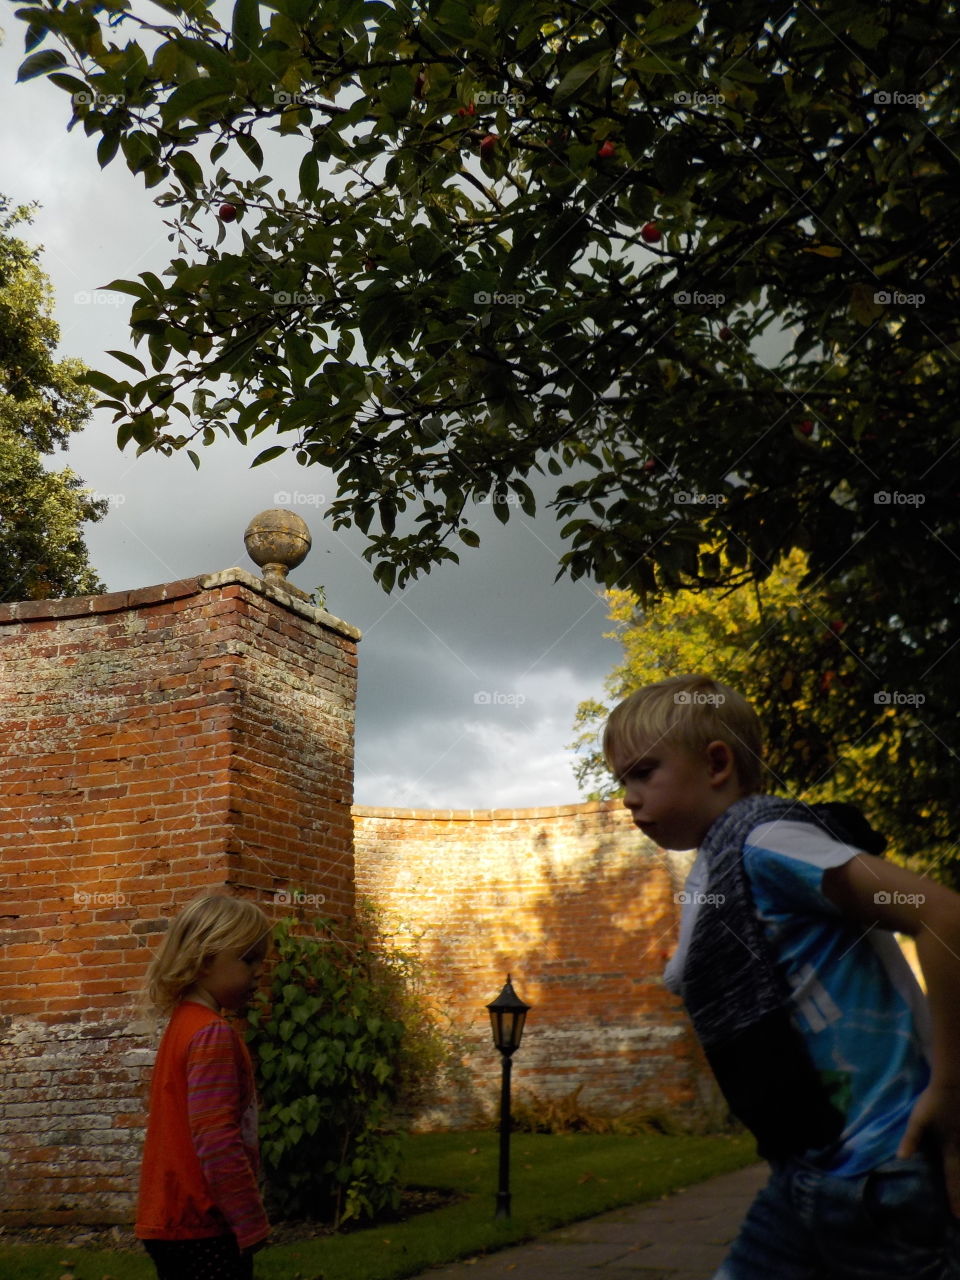 Walled garden & kids 